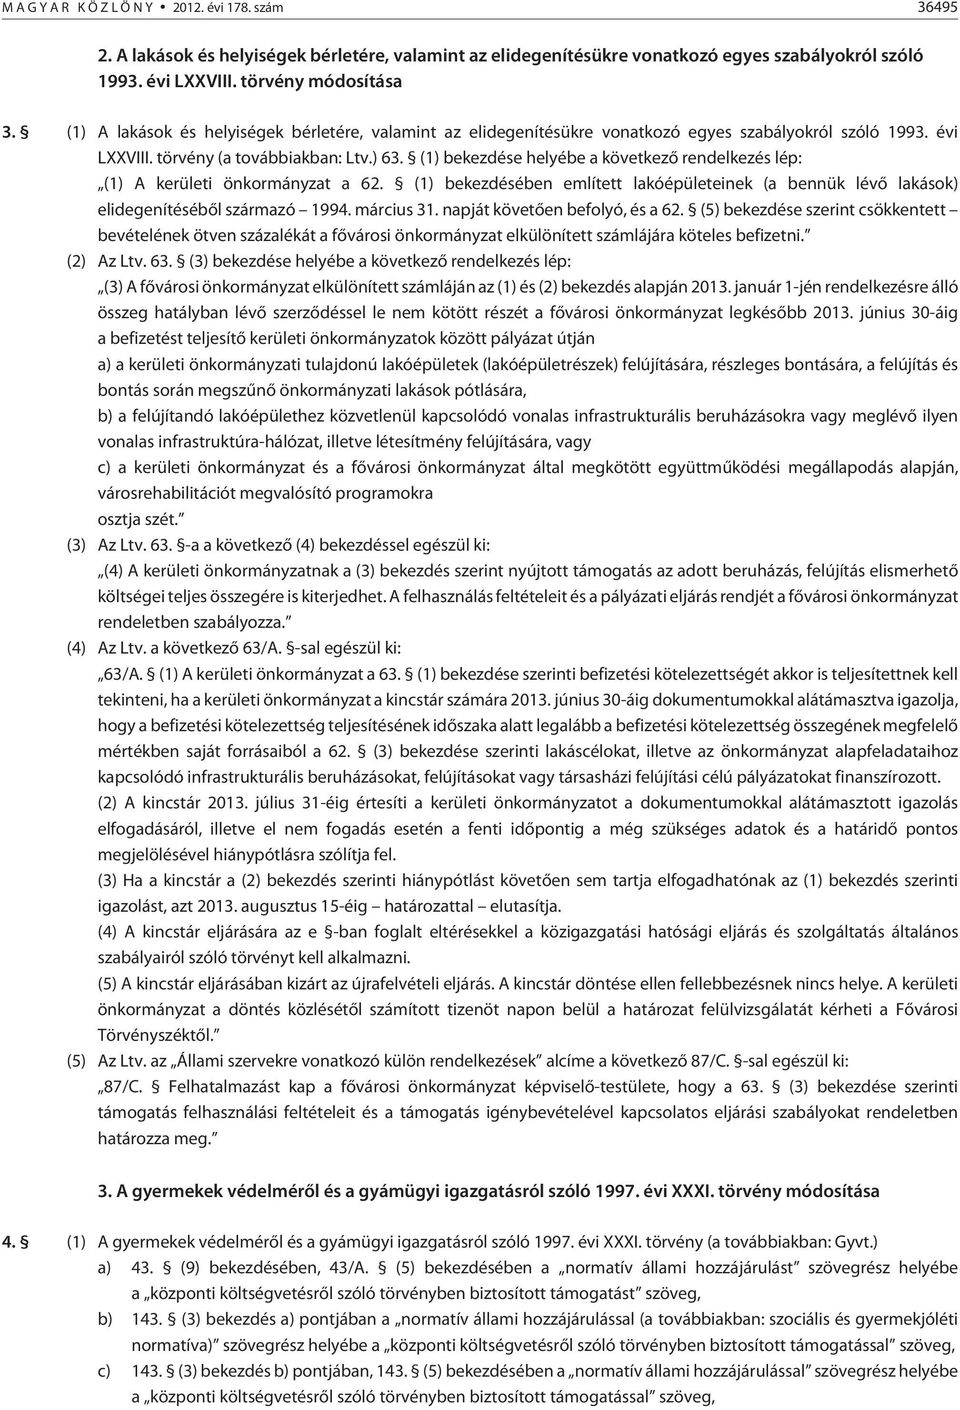 (1) bekezdése helyébe a következõ rendelkezés lép: (1) A kerületi önkormányzat a 62. (1) bekezdésében említett lakóépületeinek (a bennük lévõ lakások) elidegenítésébõl származó 1994. március 31.